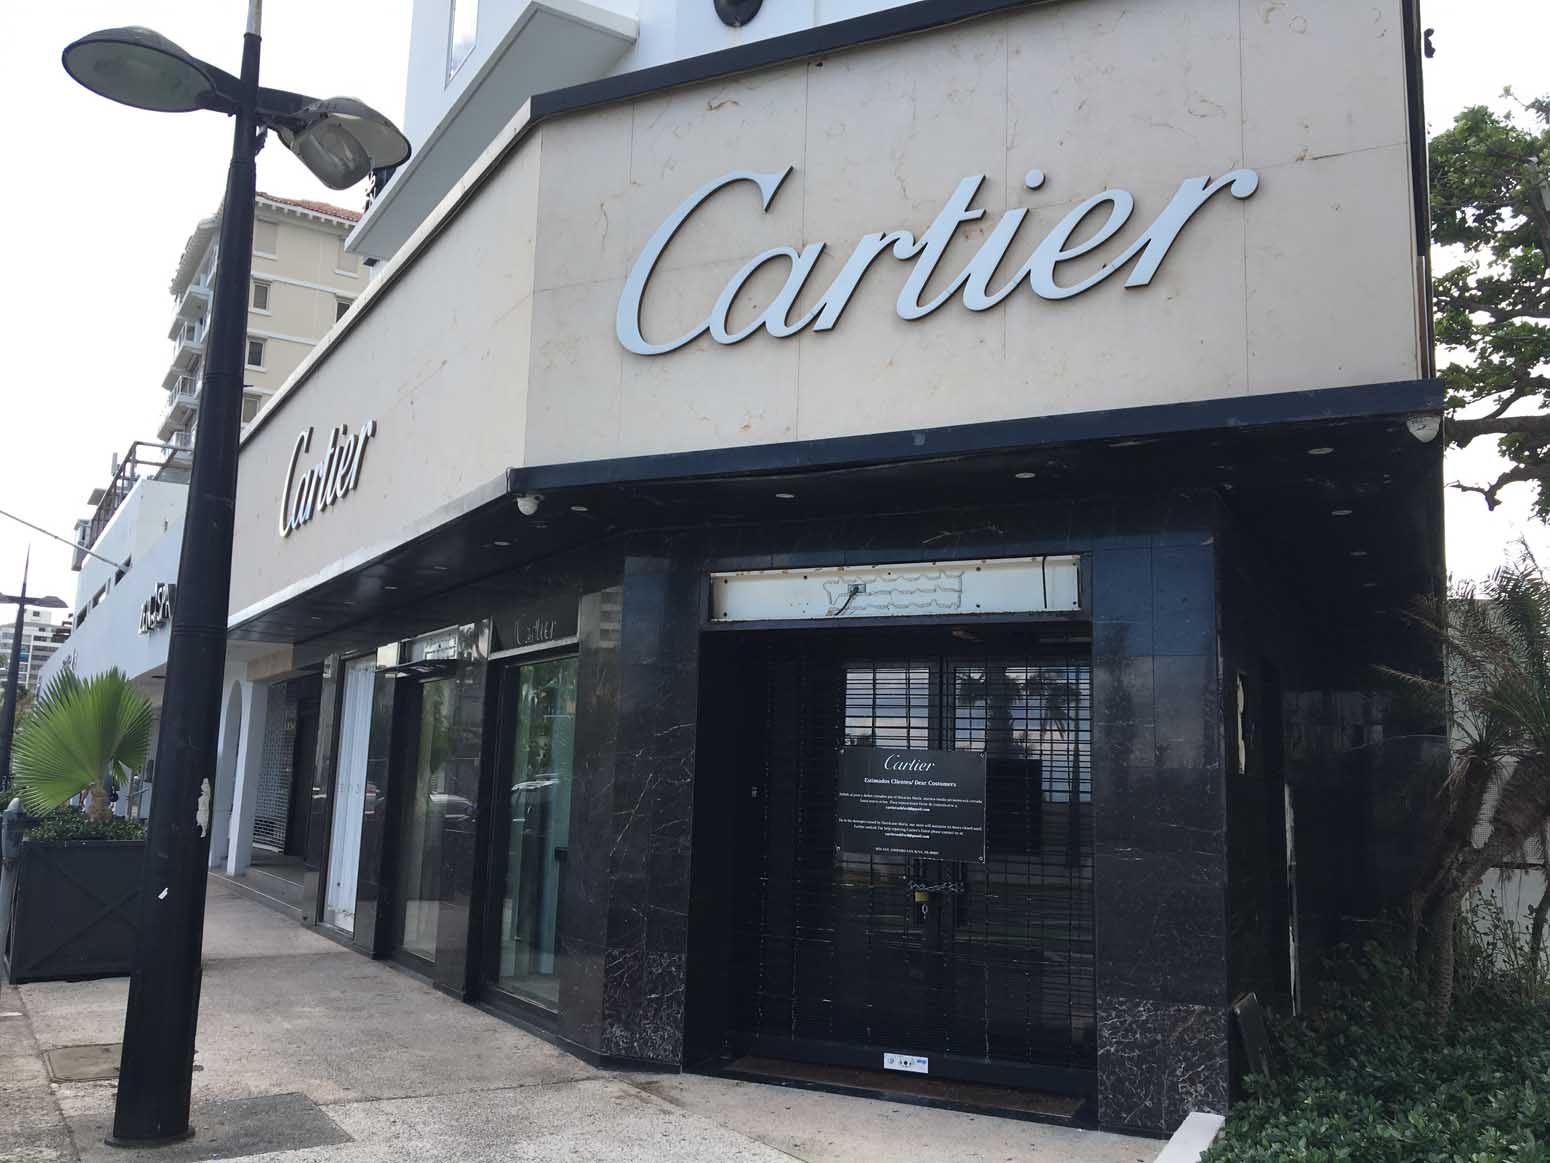 The closed Cartier store in Condonado